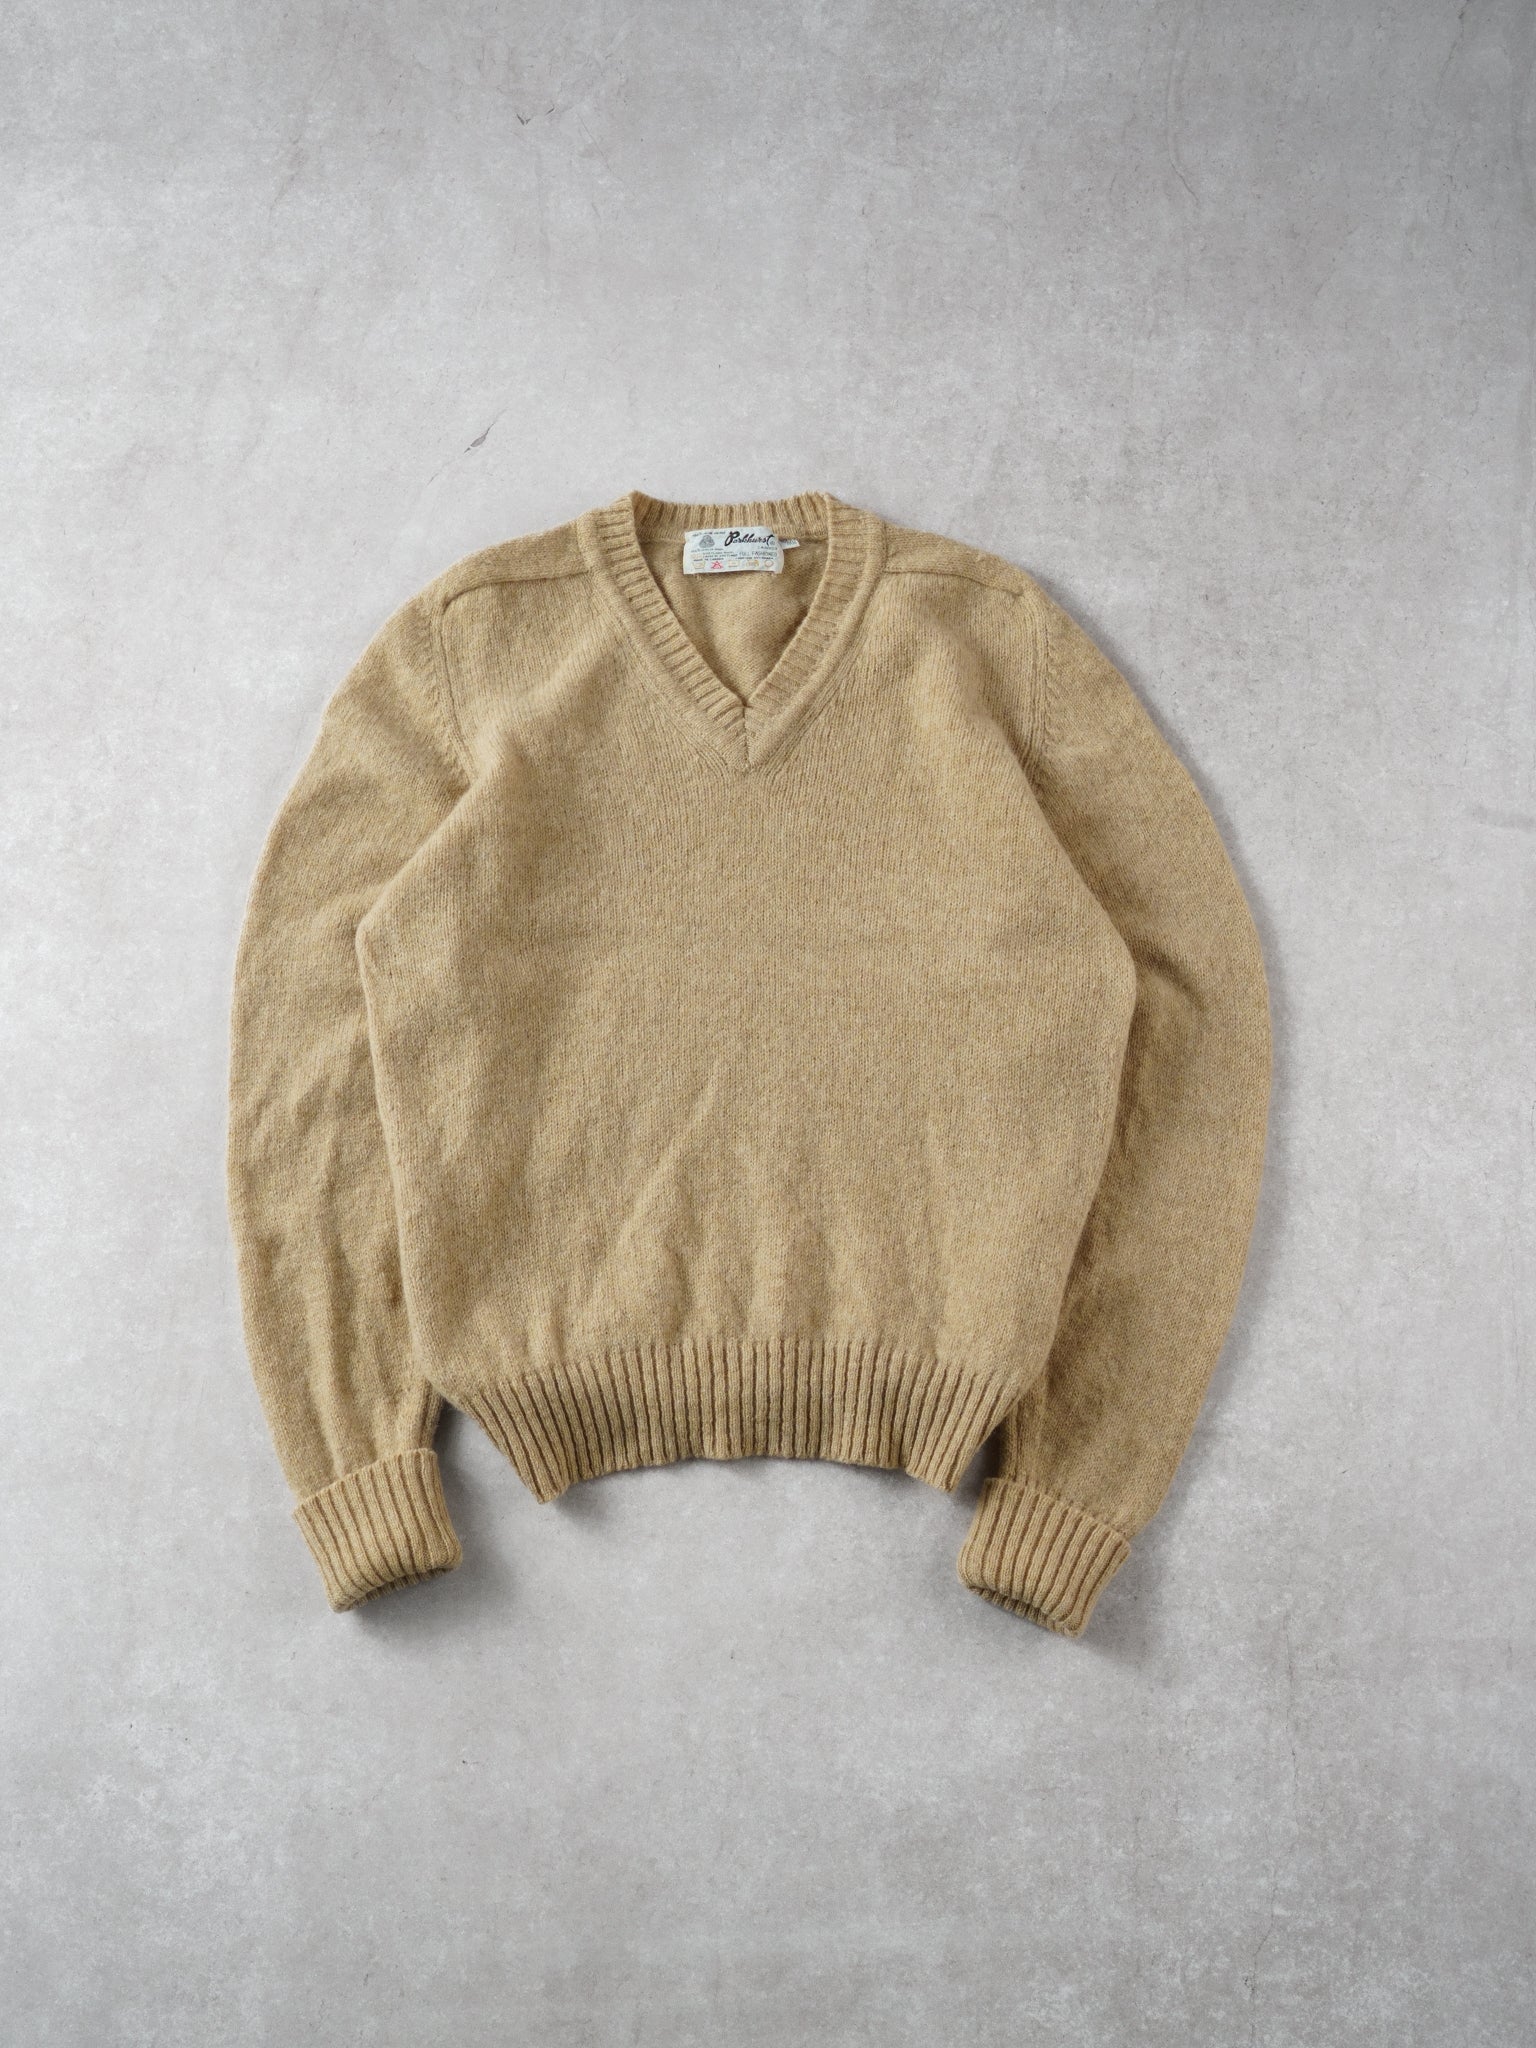 Vintage 90s Beige Parkhurts Wool Knit Vneck Sweater (M)